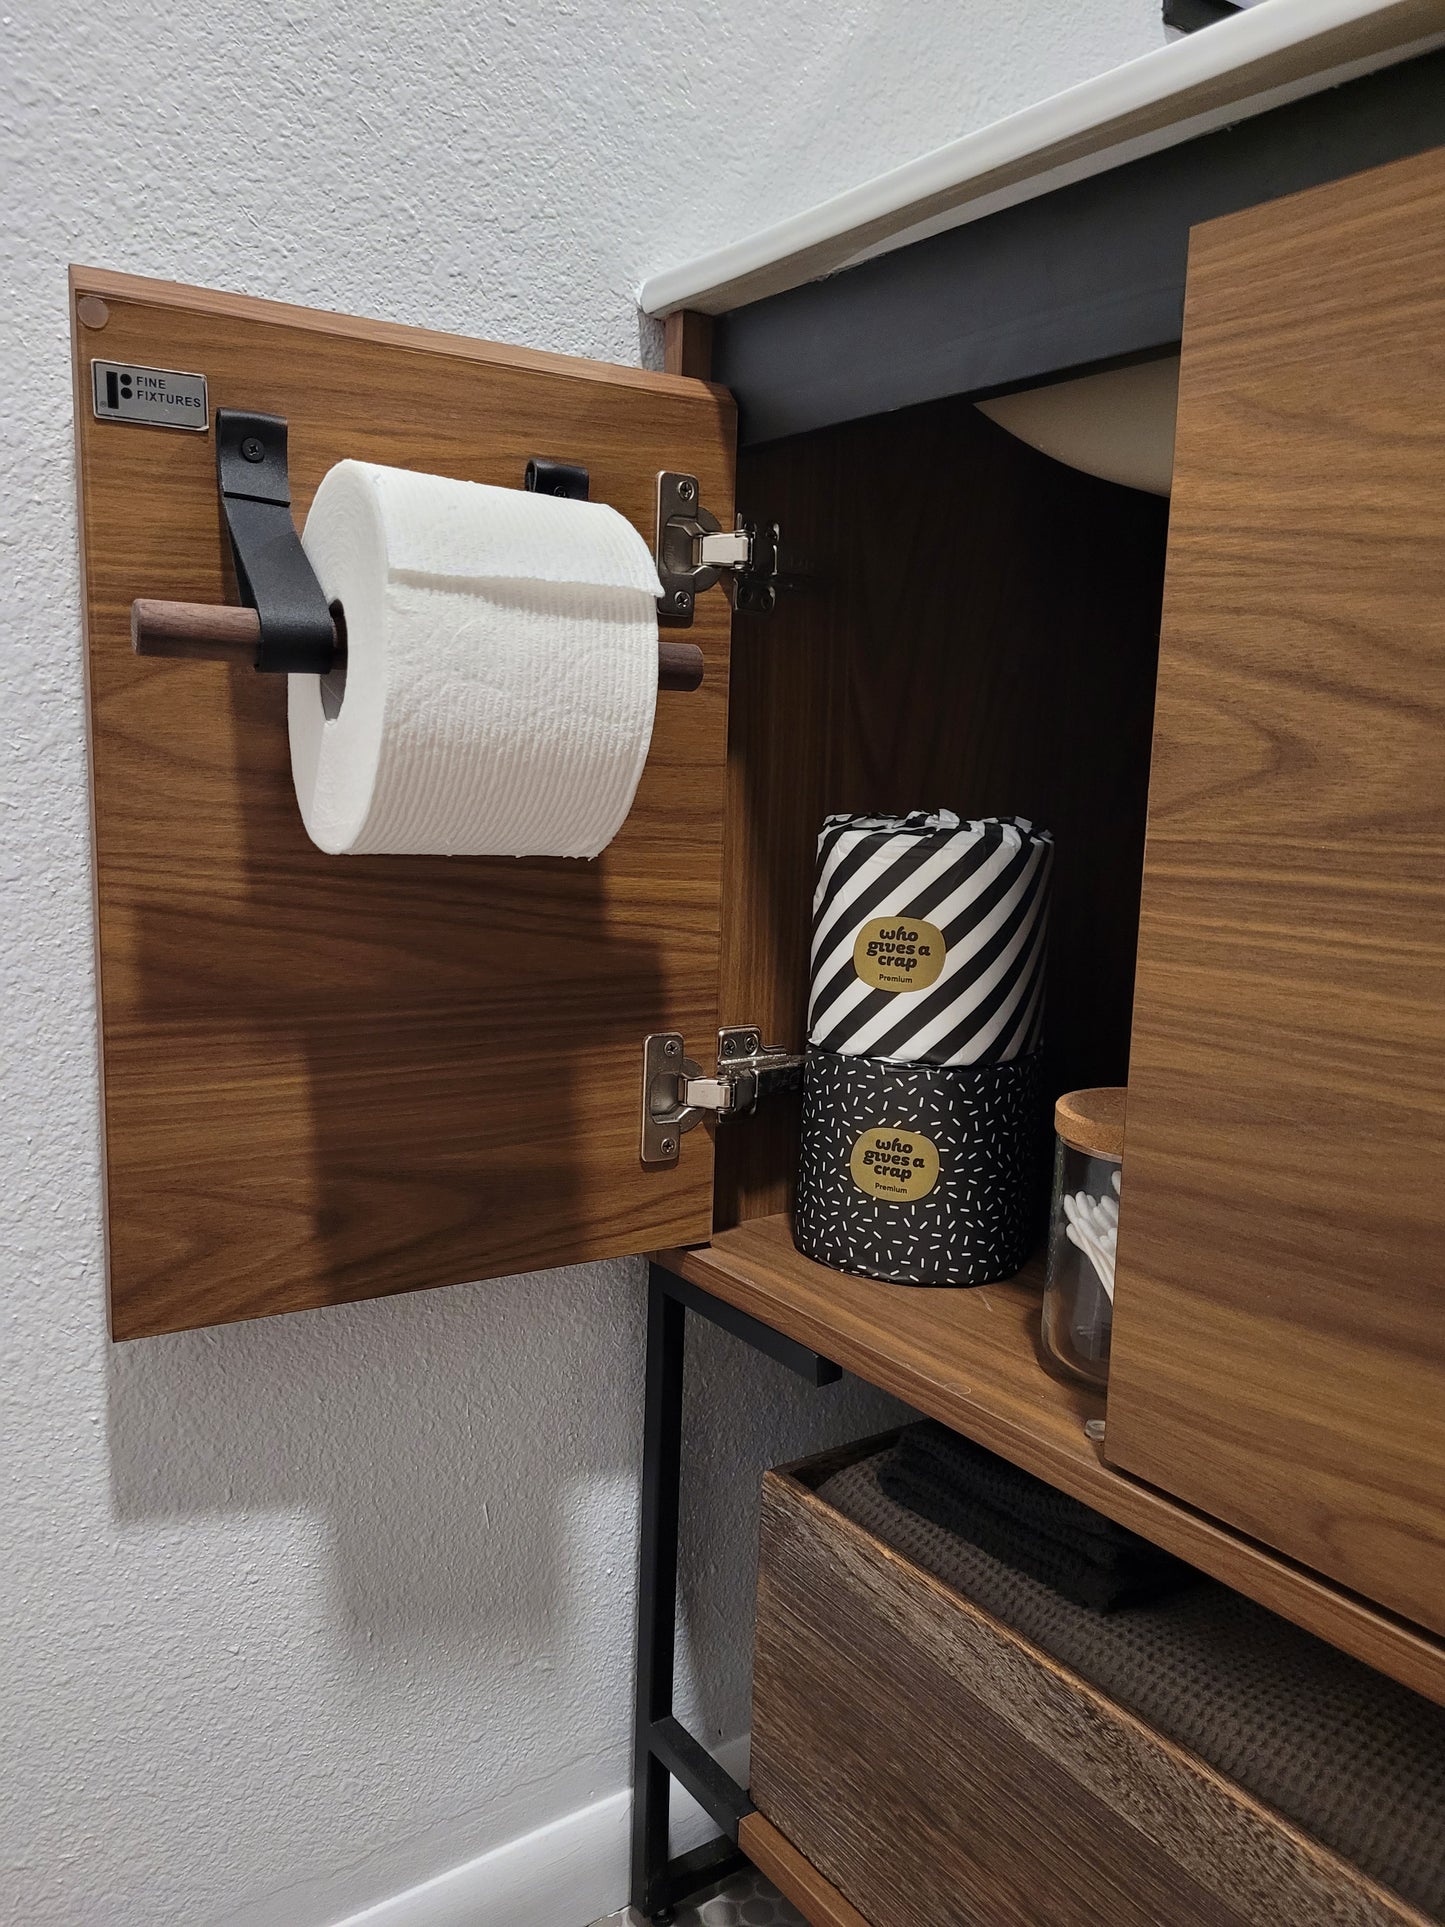 Towel Ring + Toilet Paper Holder Bundle